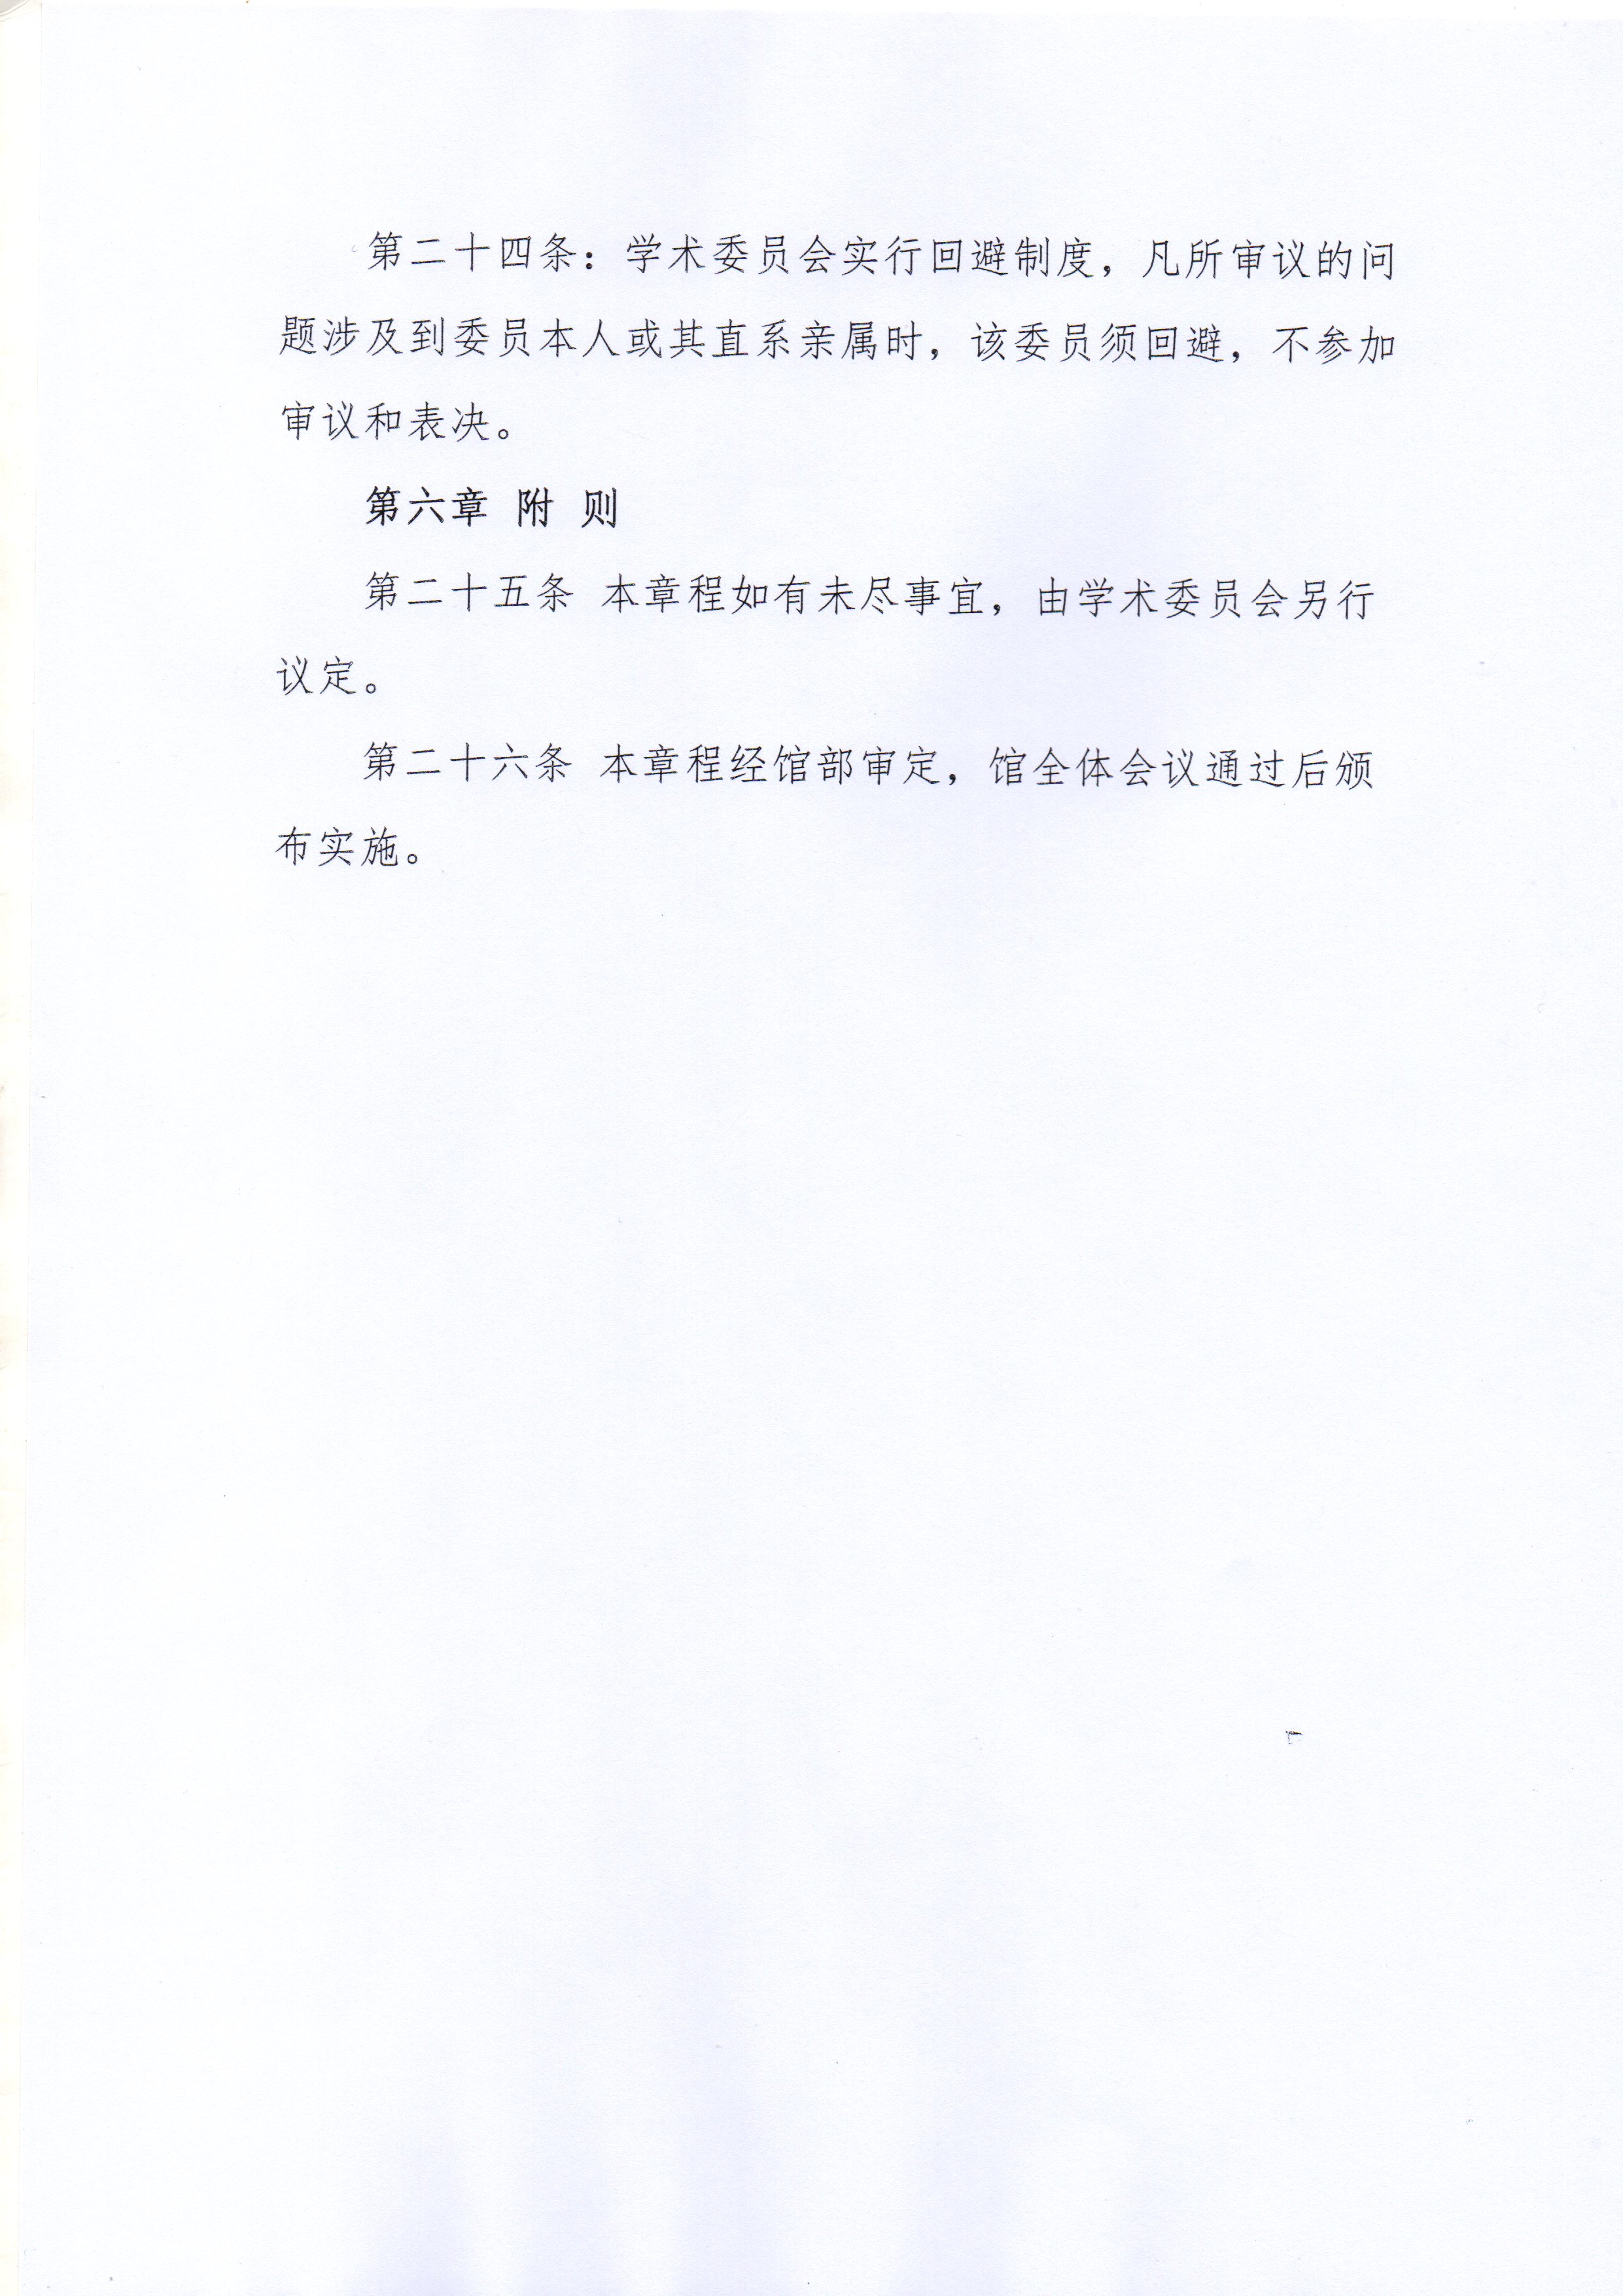 洛阳牡丹瓷博物馆学术委员会成立文件